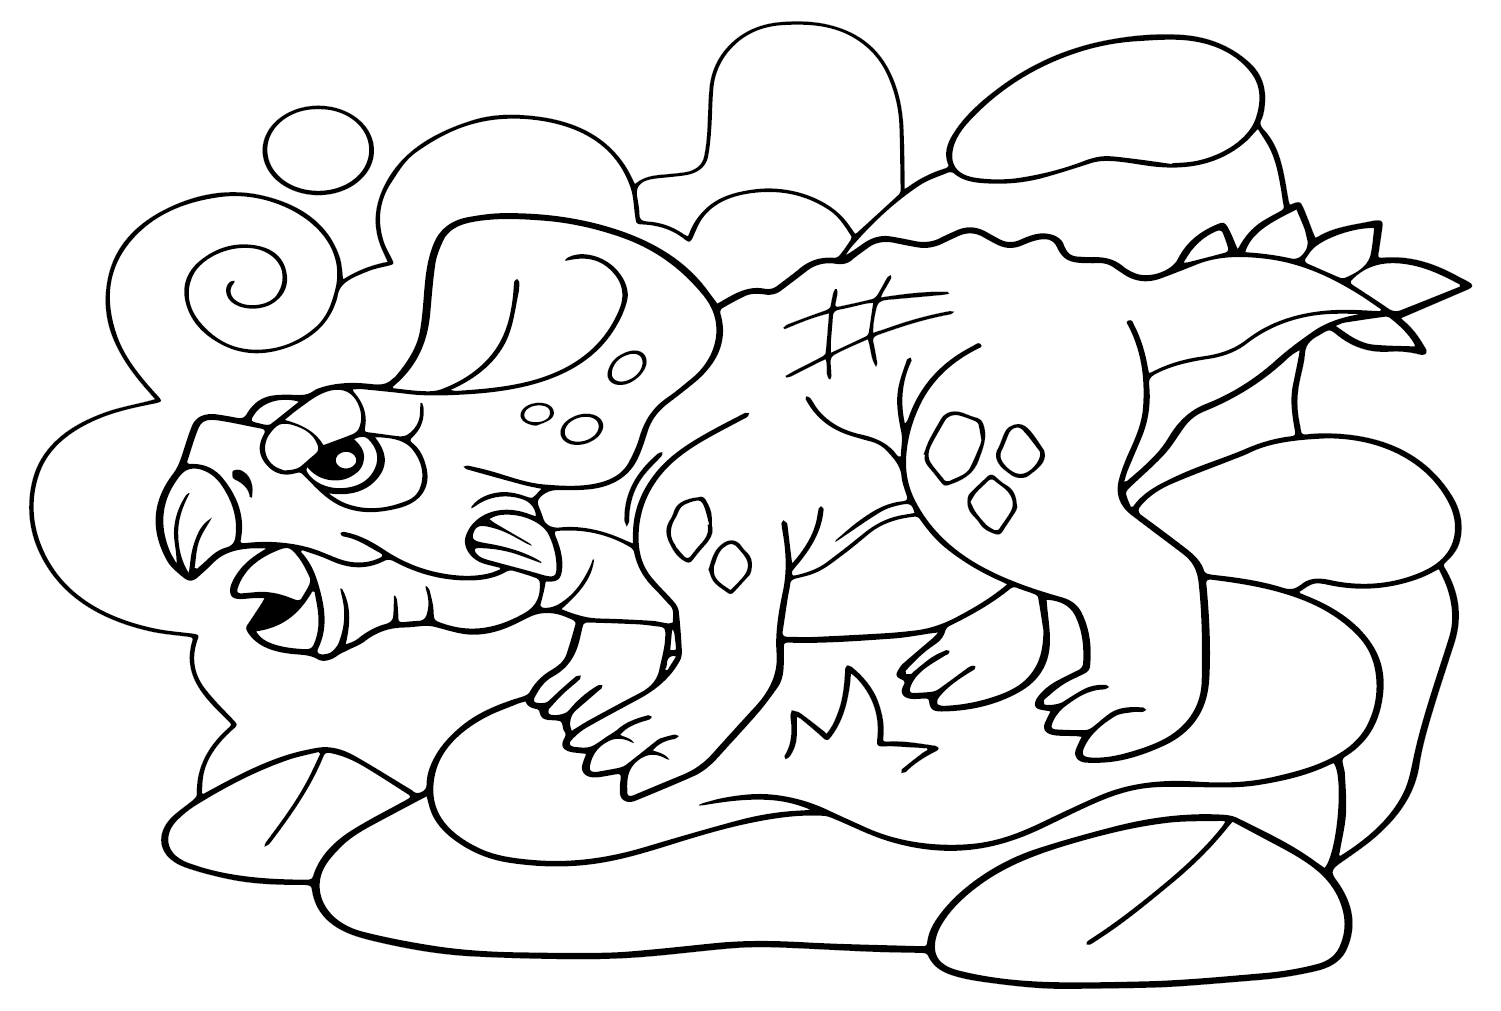 Desenho de dinossauro pré-histórico Protoceratops para colorir de Protoceratops